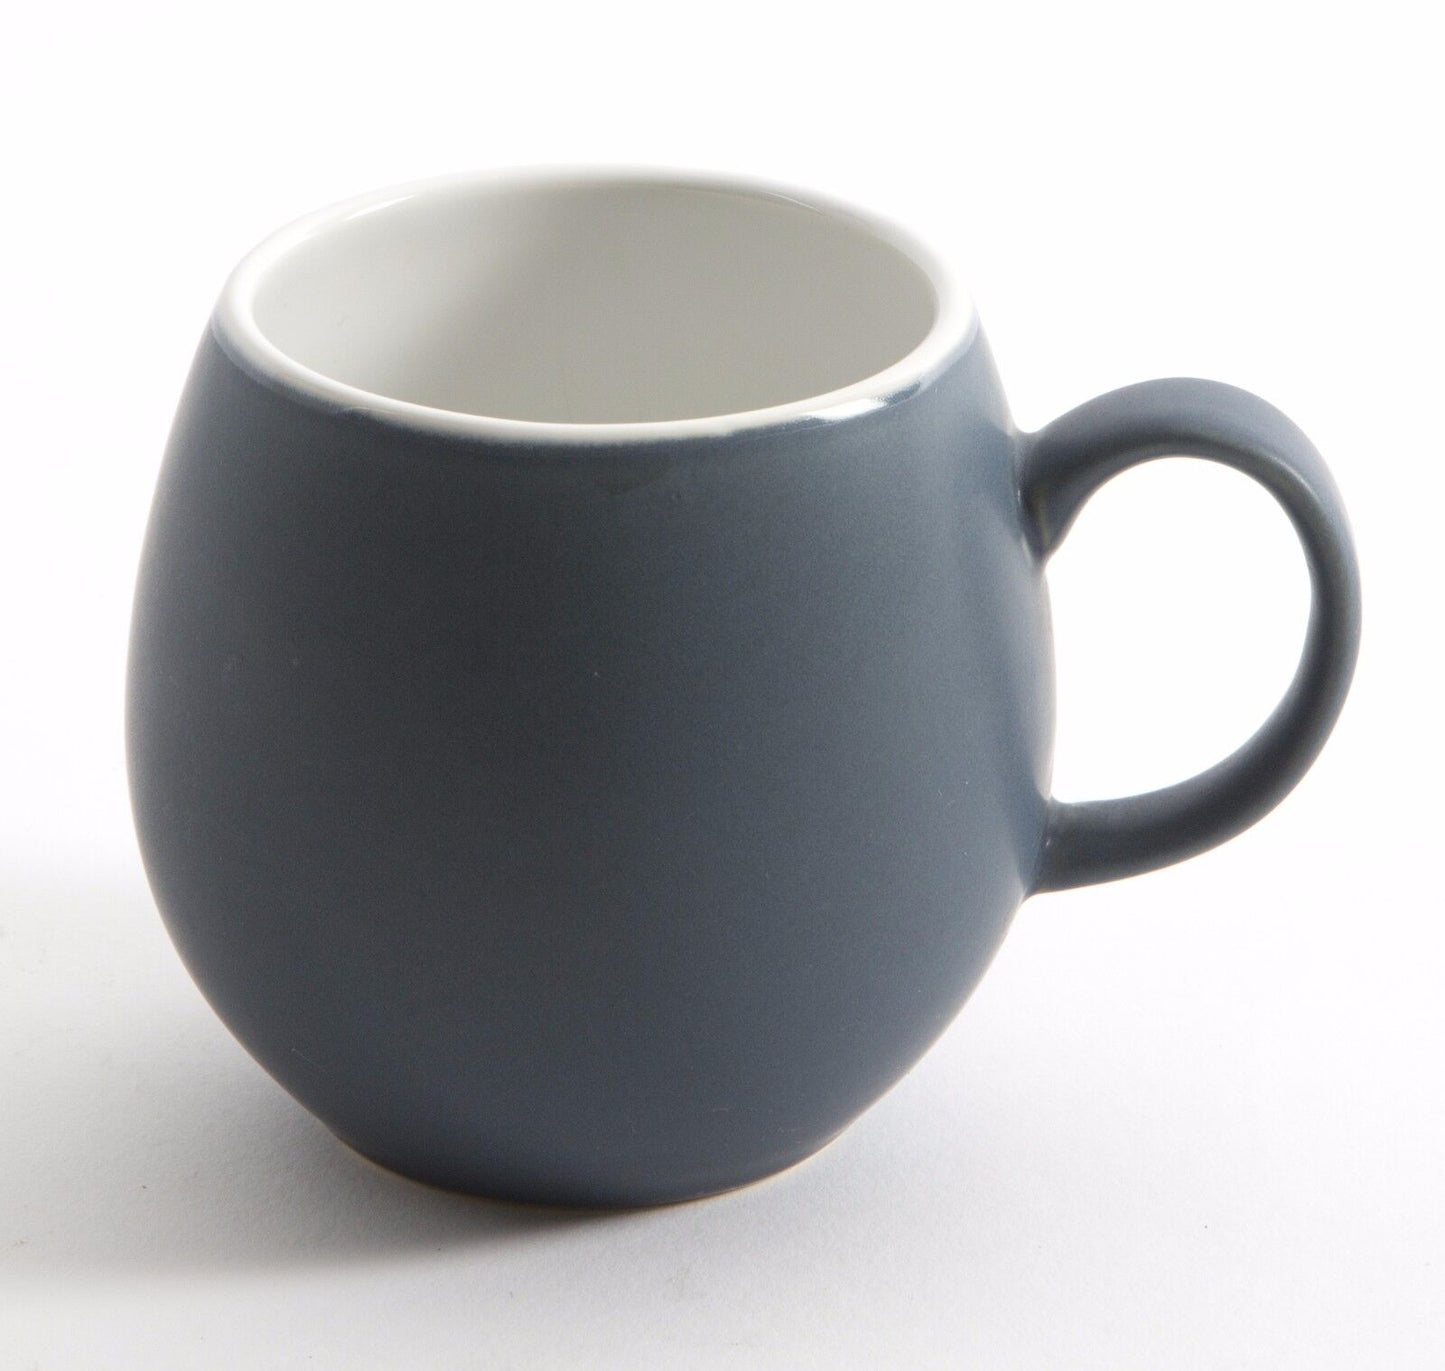 Set of 2 or 4 London Pottery Pebble Mugs - Slate Blue or Gloss Black